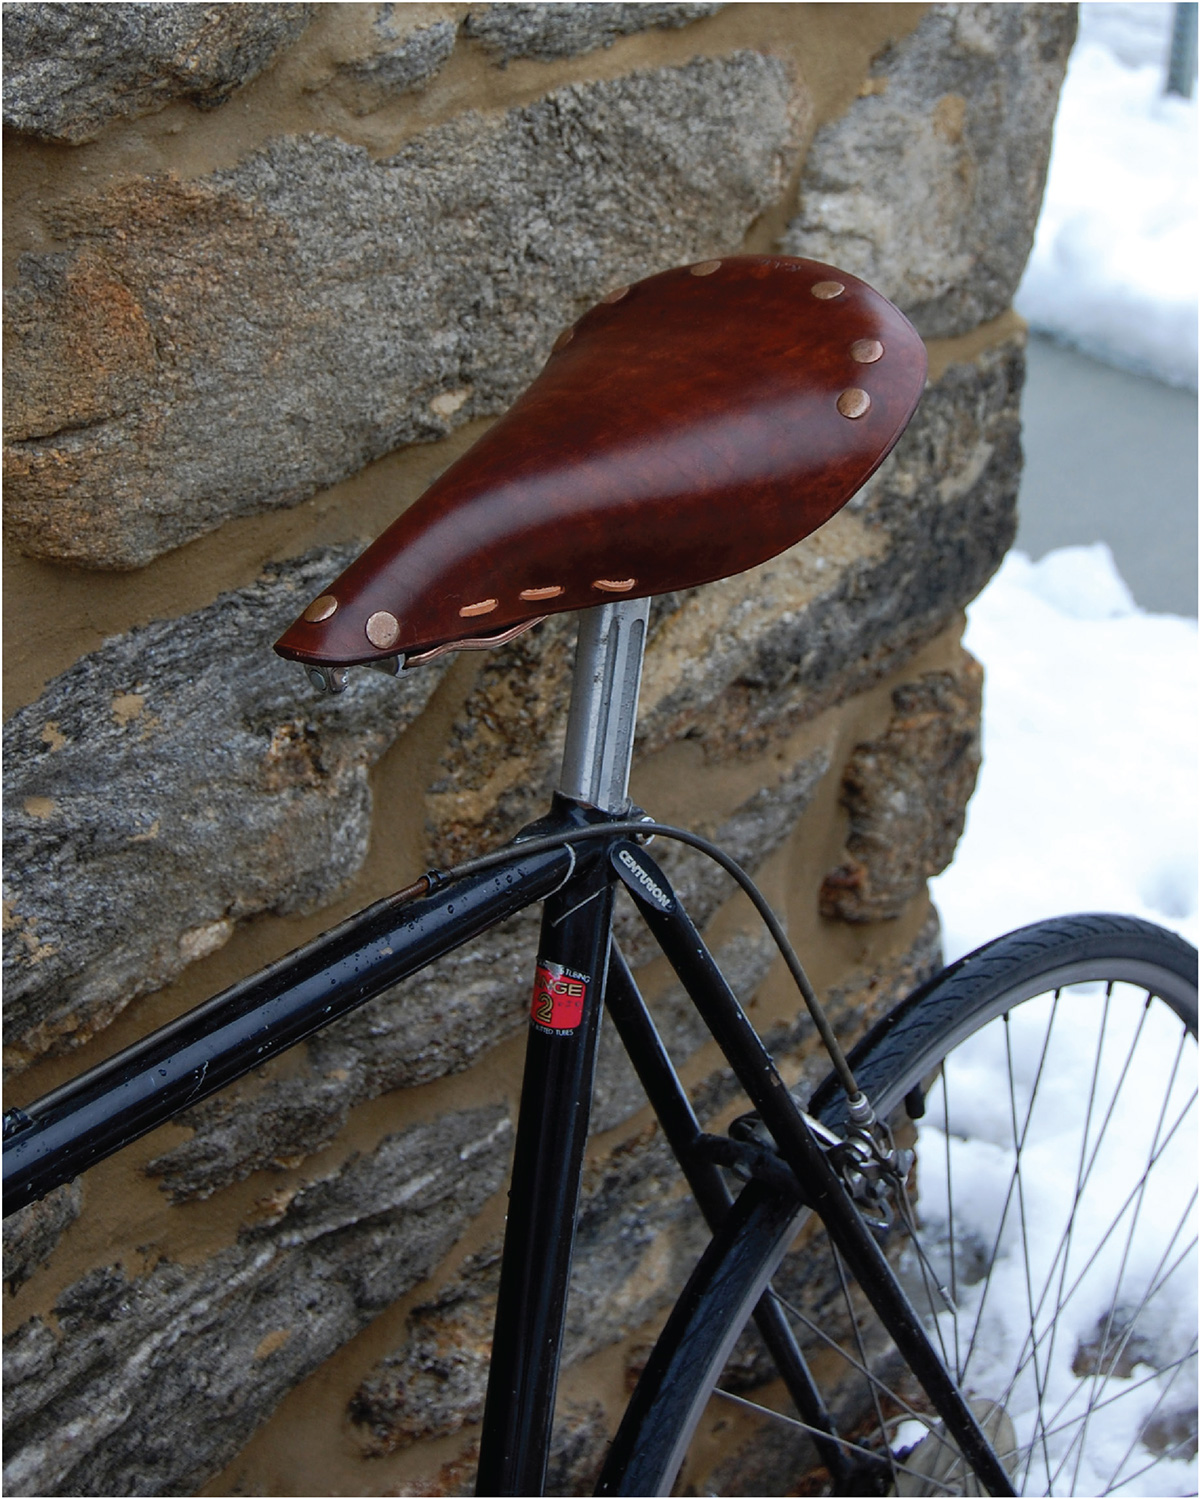 brooks england Bike Bicycle saddle leather